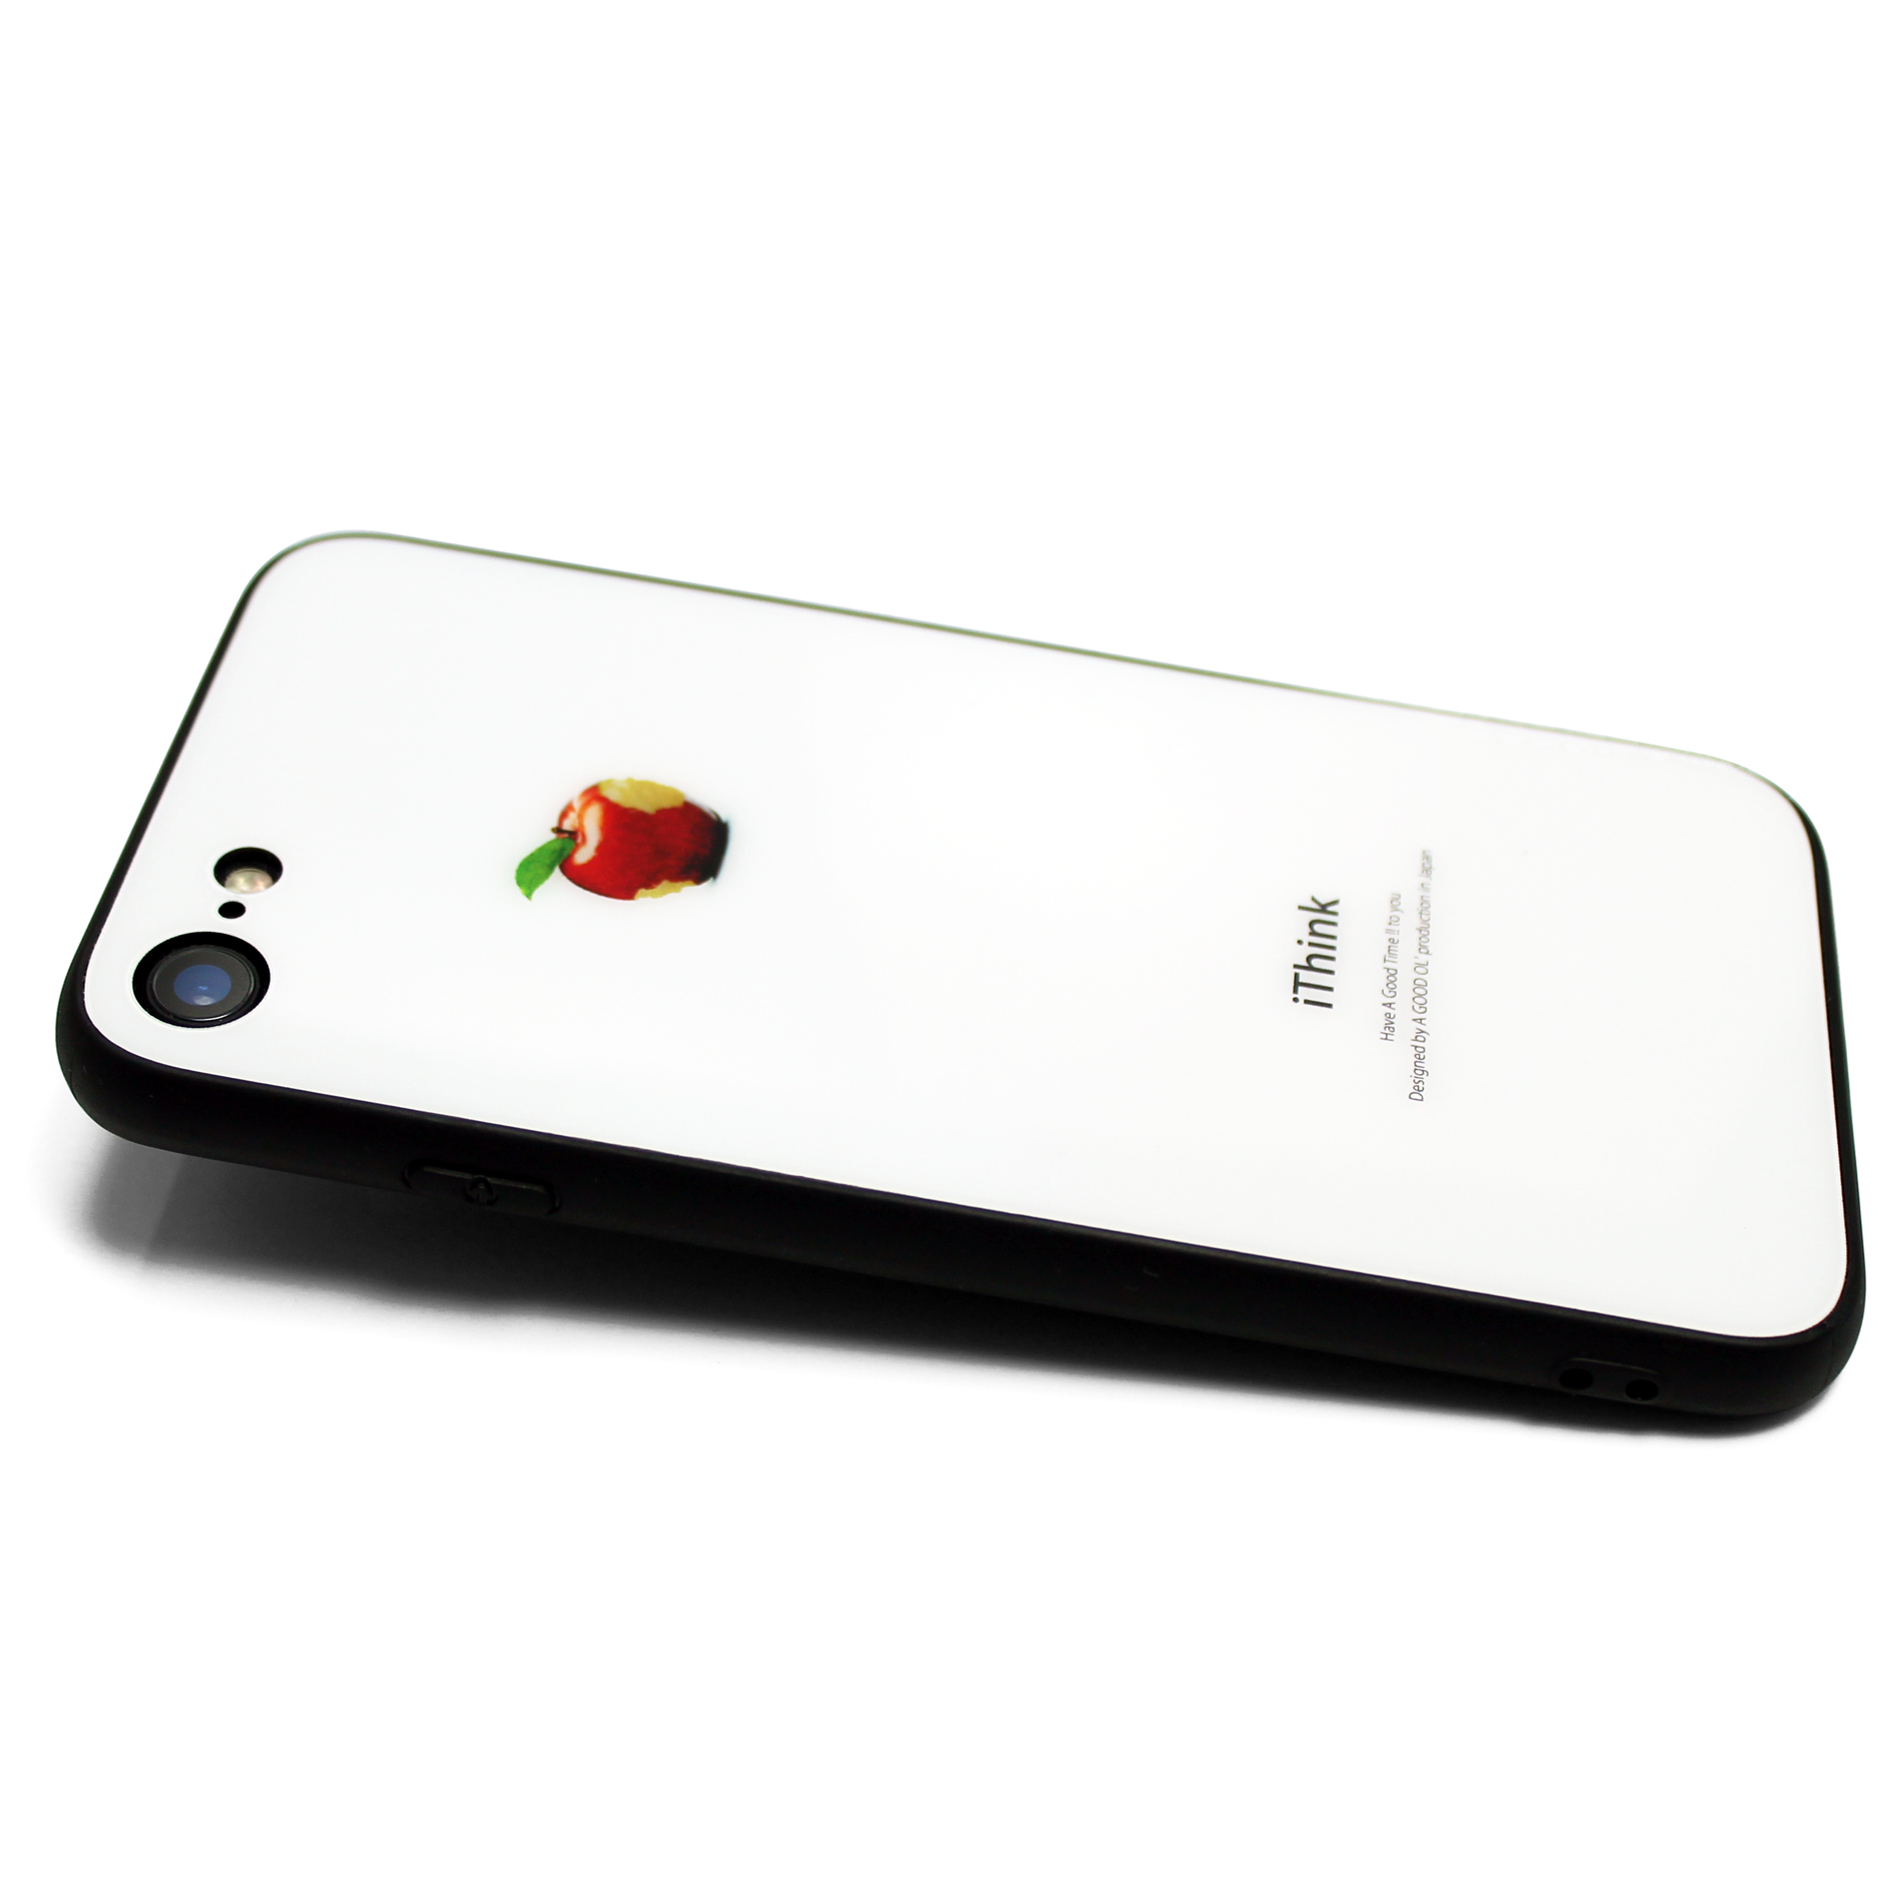 曲げても落としても割れないガラス Iphoneケースカバー ホワイト ブラック 赤リンゴ 耐衝撃 Iichi ハンドメイド クラフト作品 手仕事品の通販